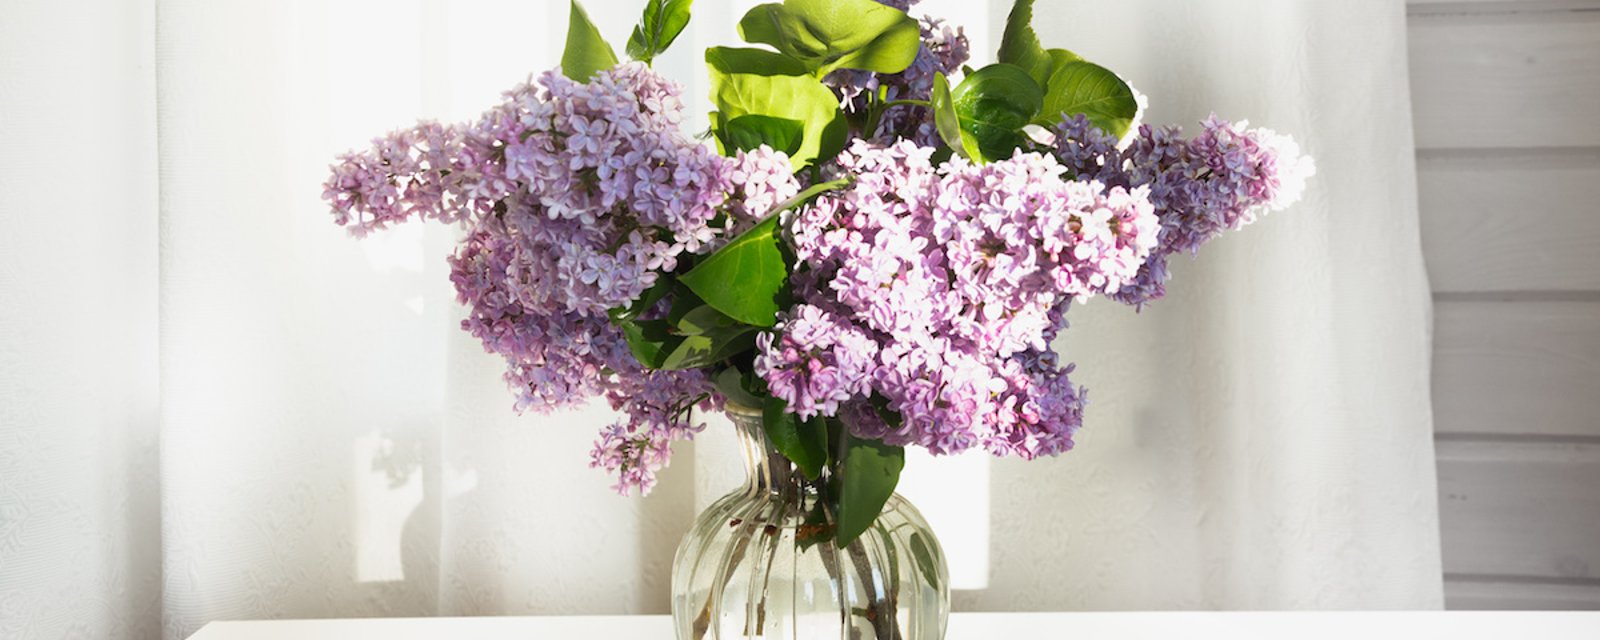 Comment empêcher les lilas de se faner dans un vase